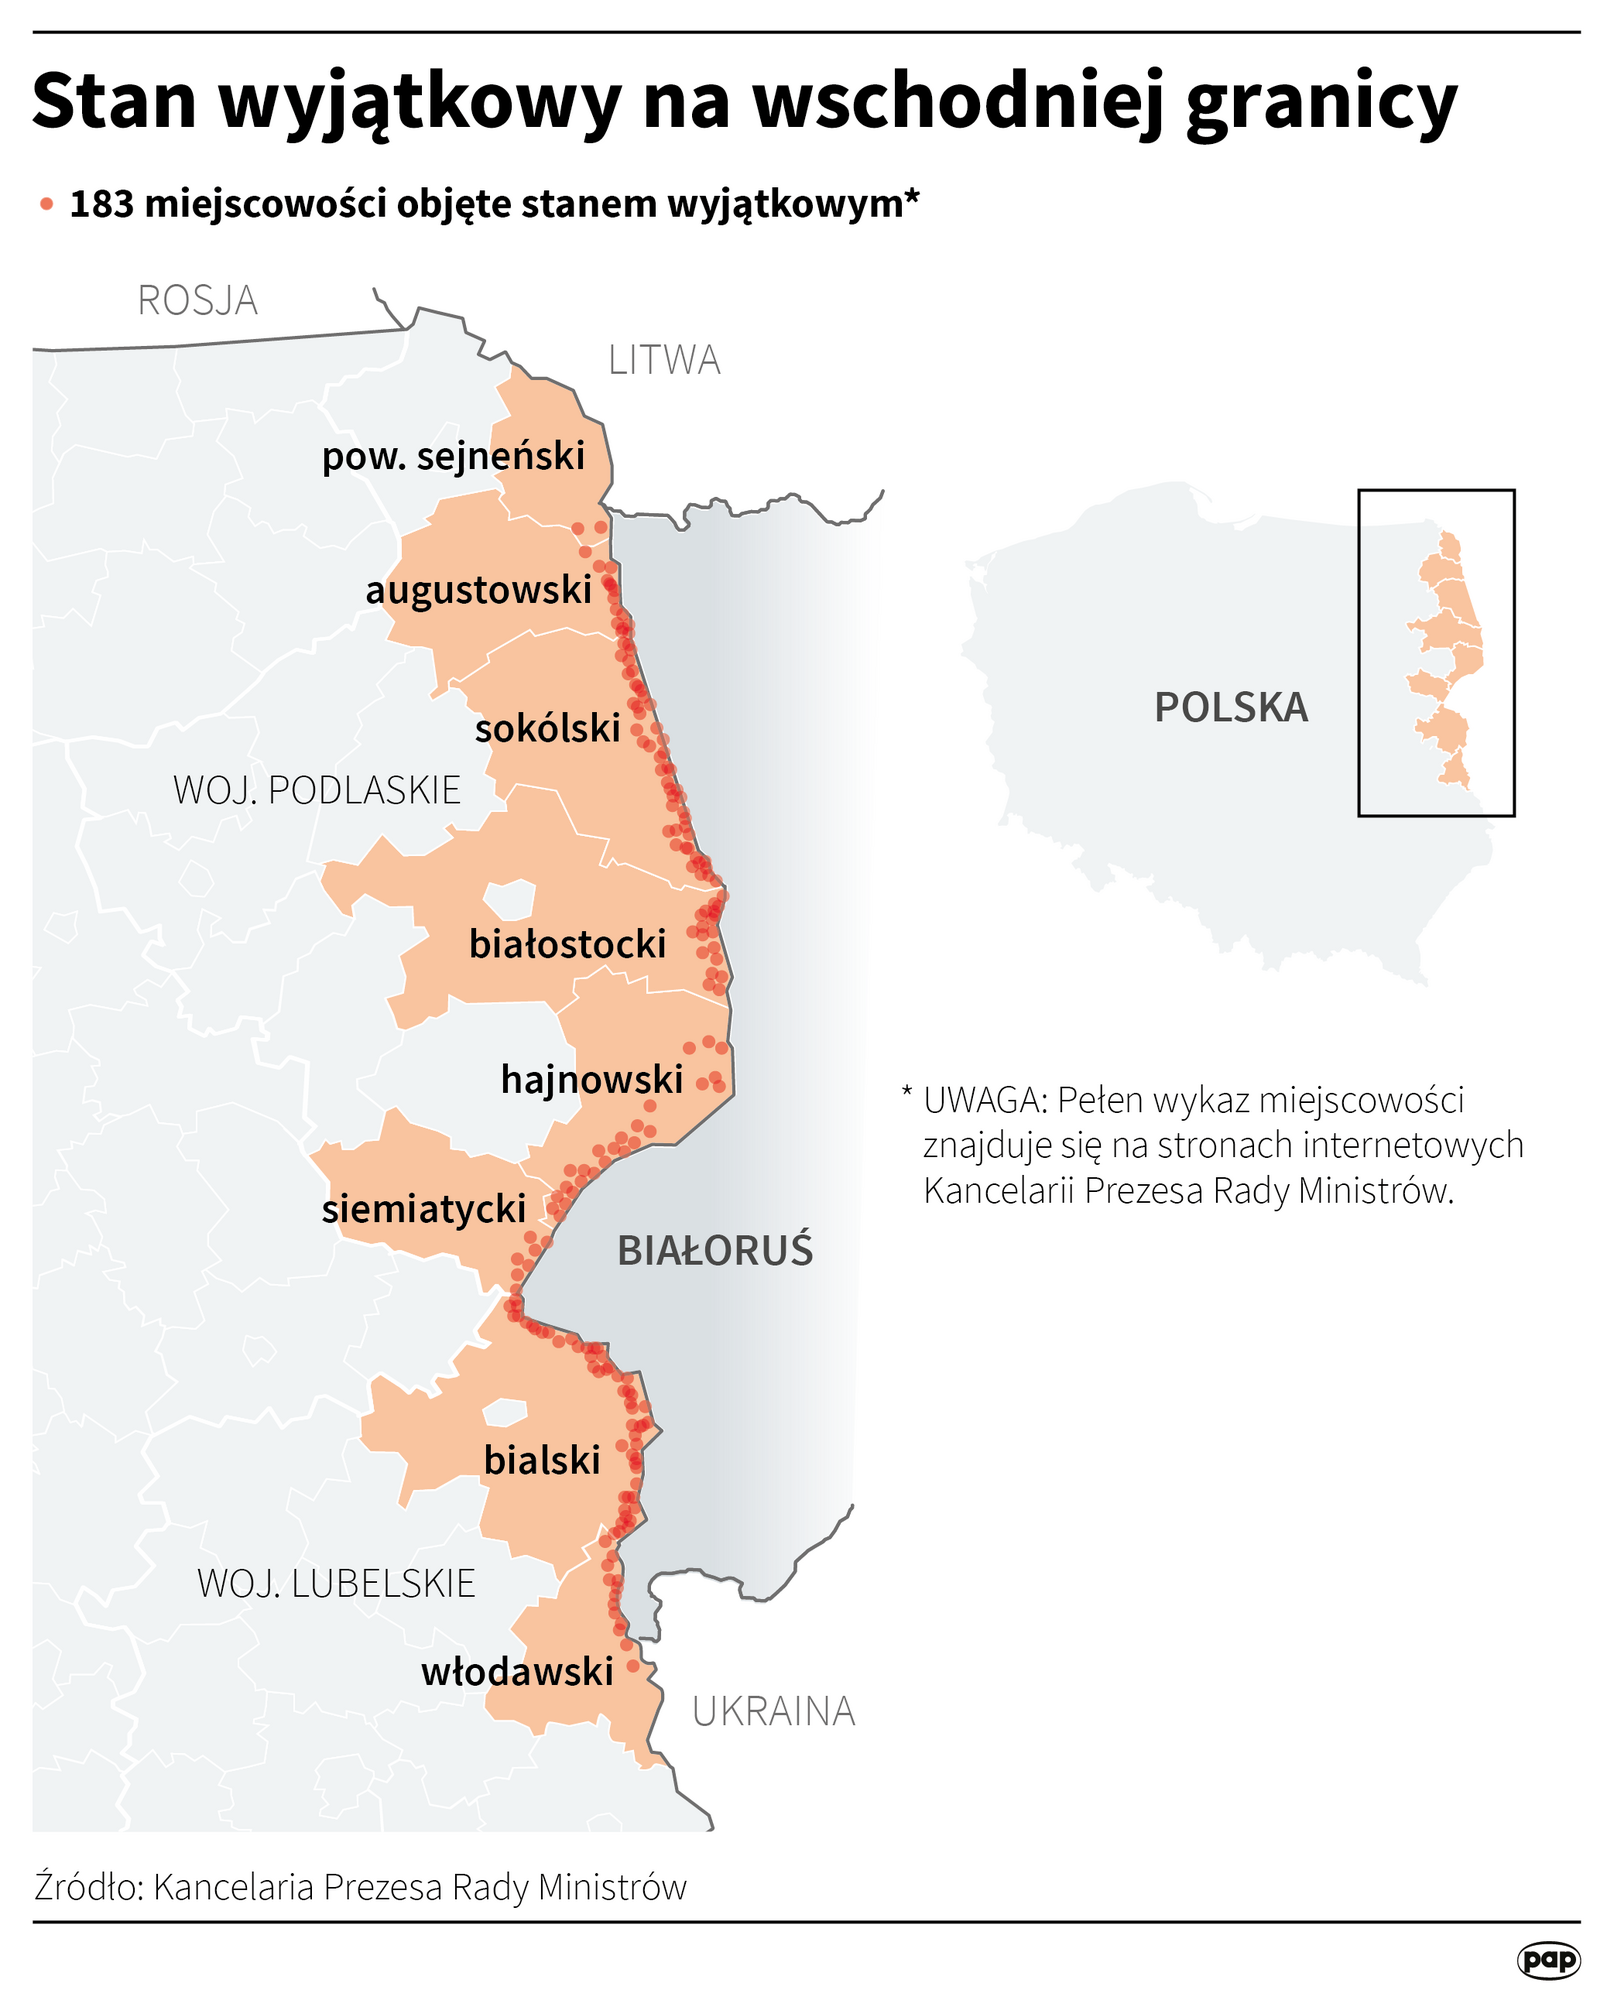 Карта по ситуации на границе Польши с Беларусью